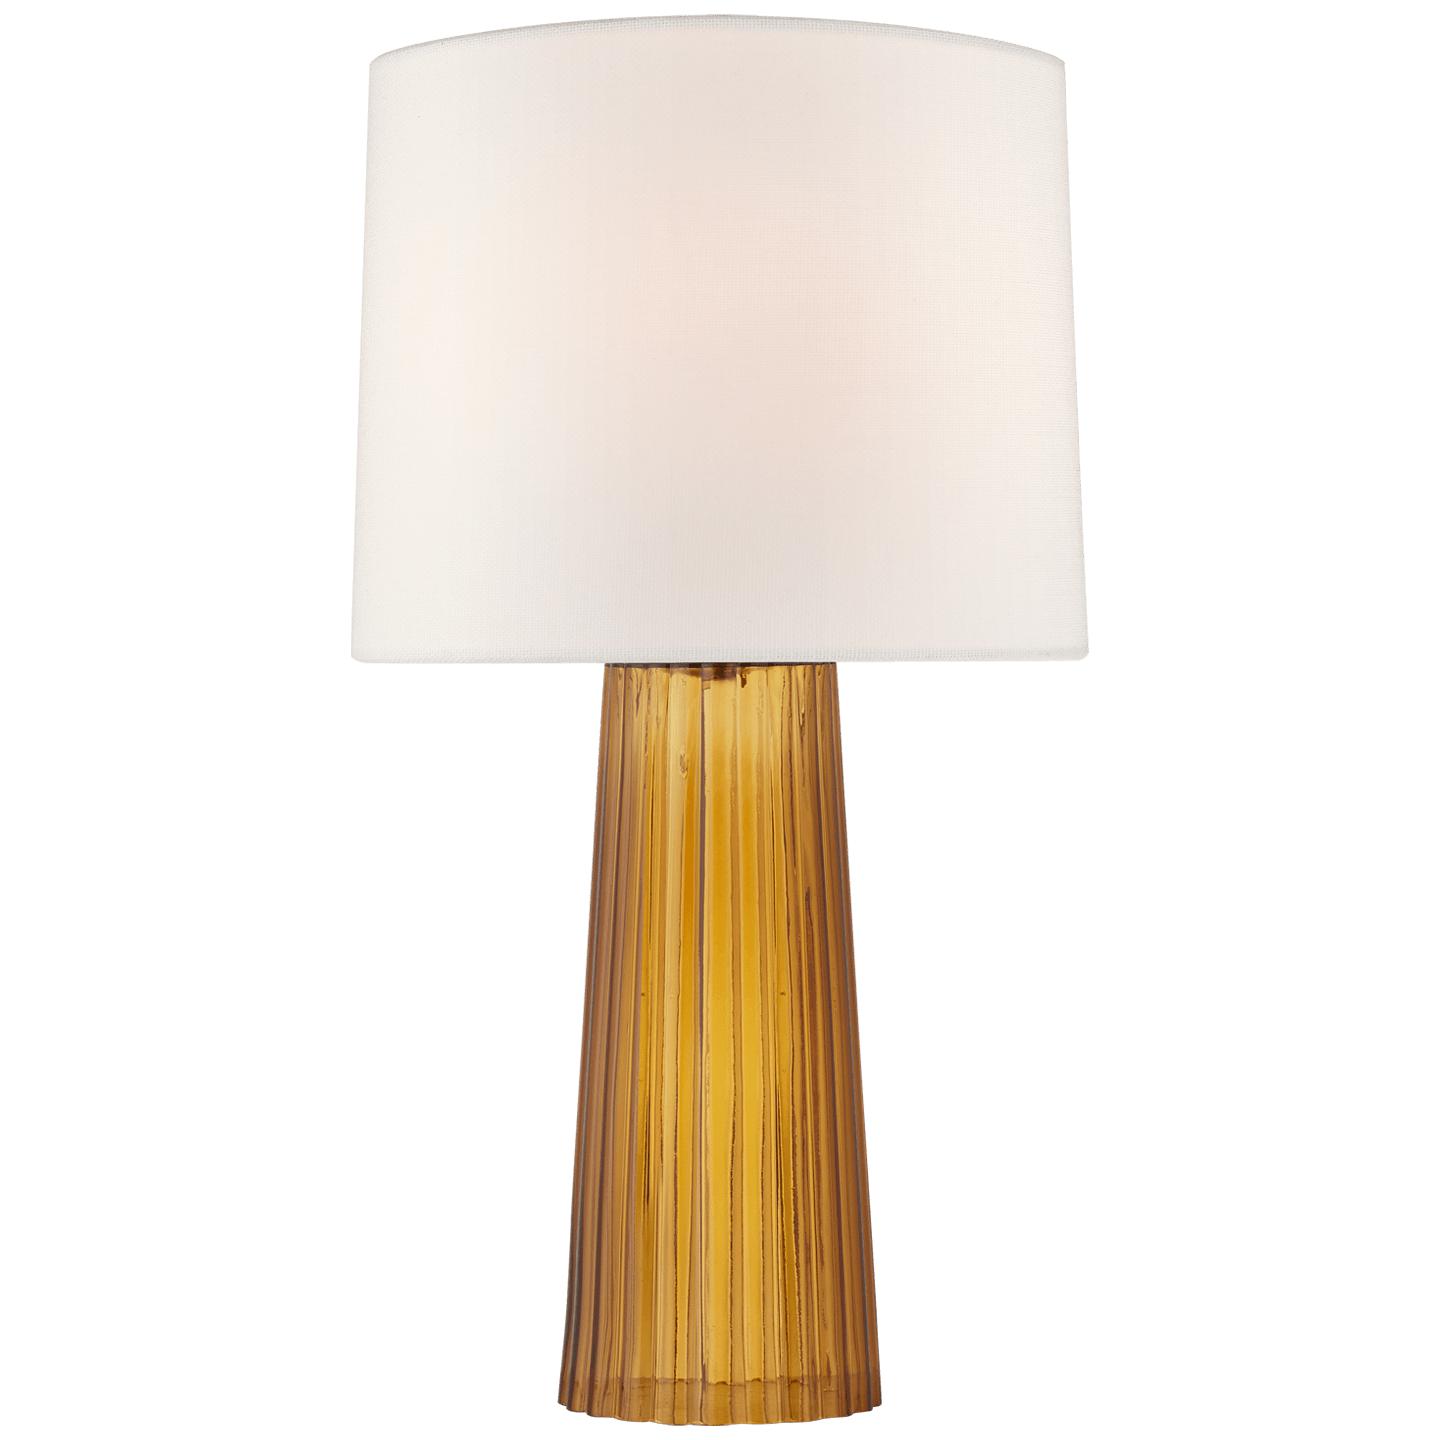 Купить Настольная лампа Danube Medium Table Lamp в интернет-магазине roooms.ru